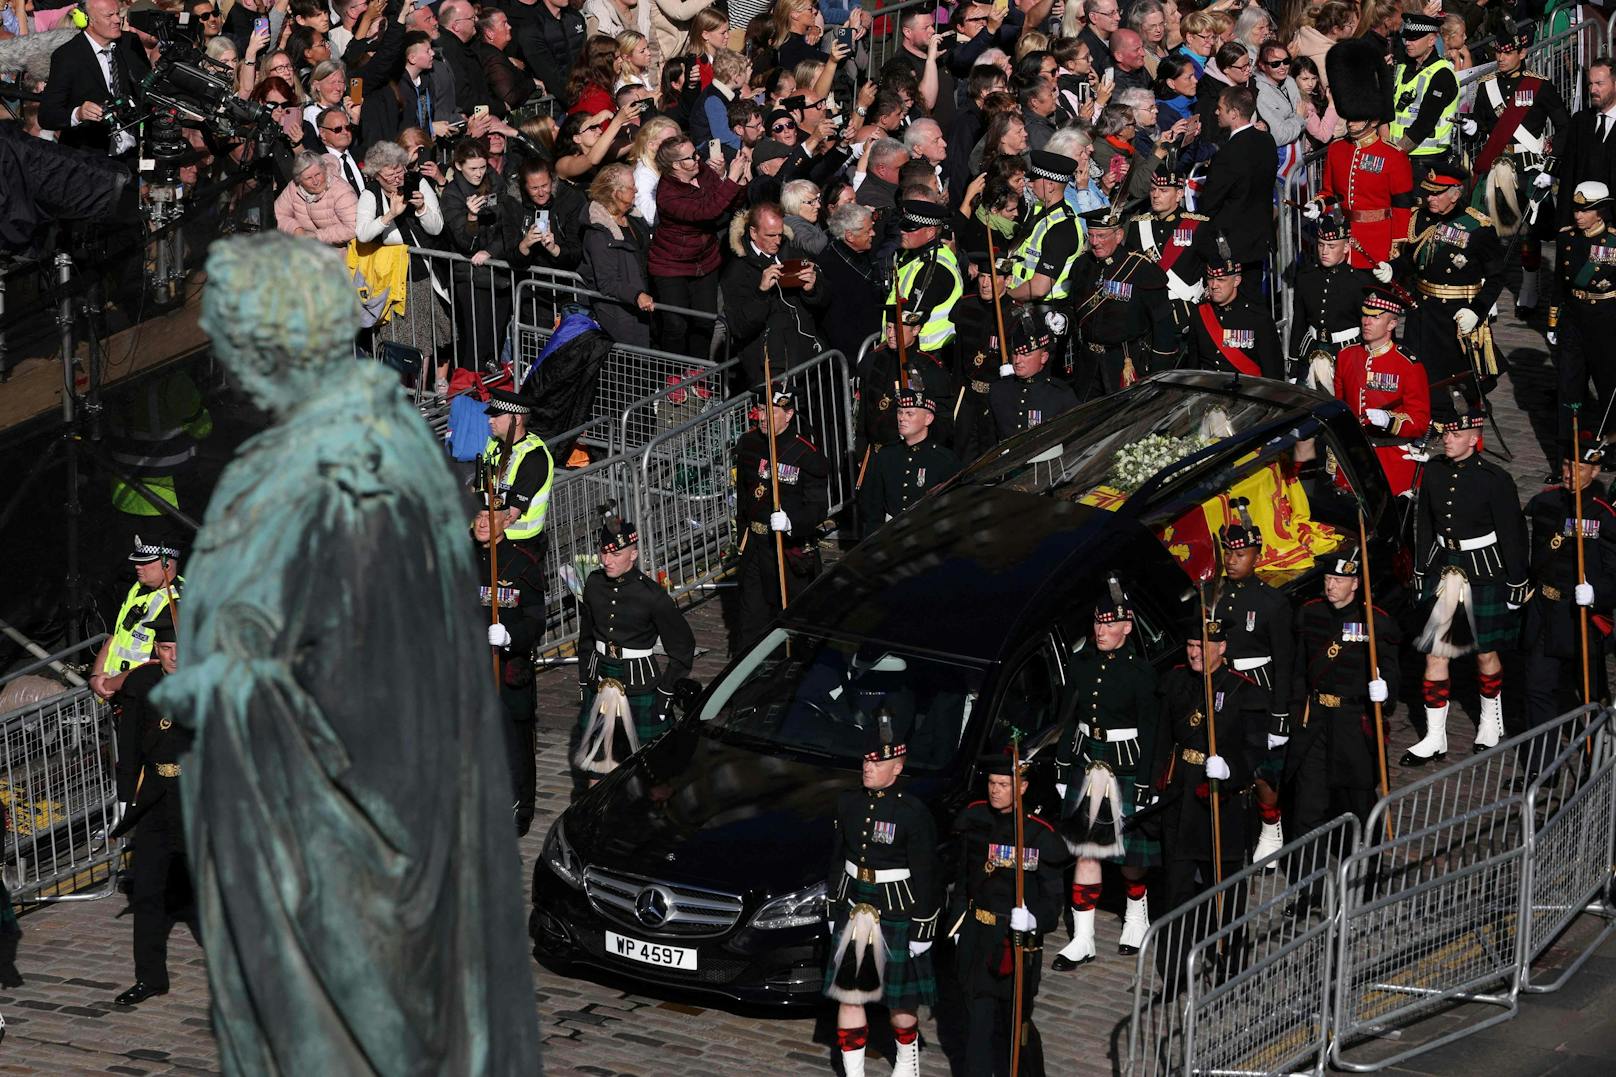 Der Sarg der verstorbenen Königin wird in die St. Giles Kathedrale in Edinburgh gebracht.